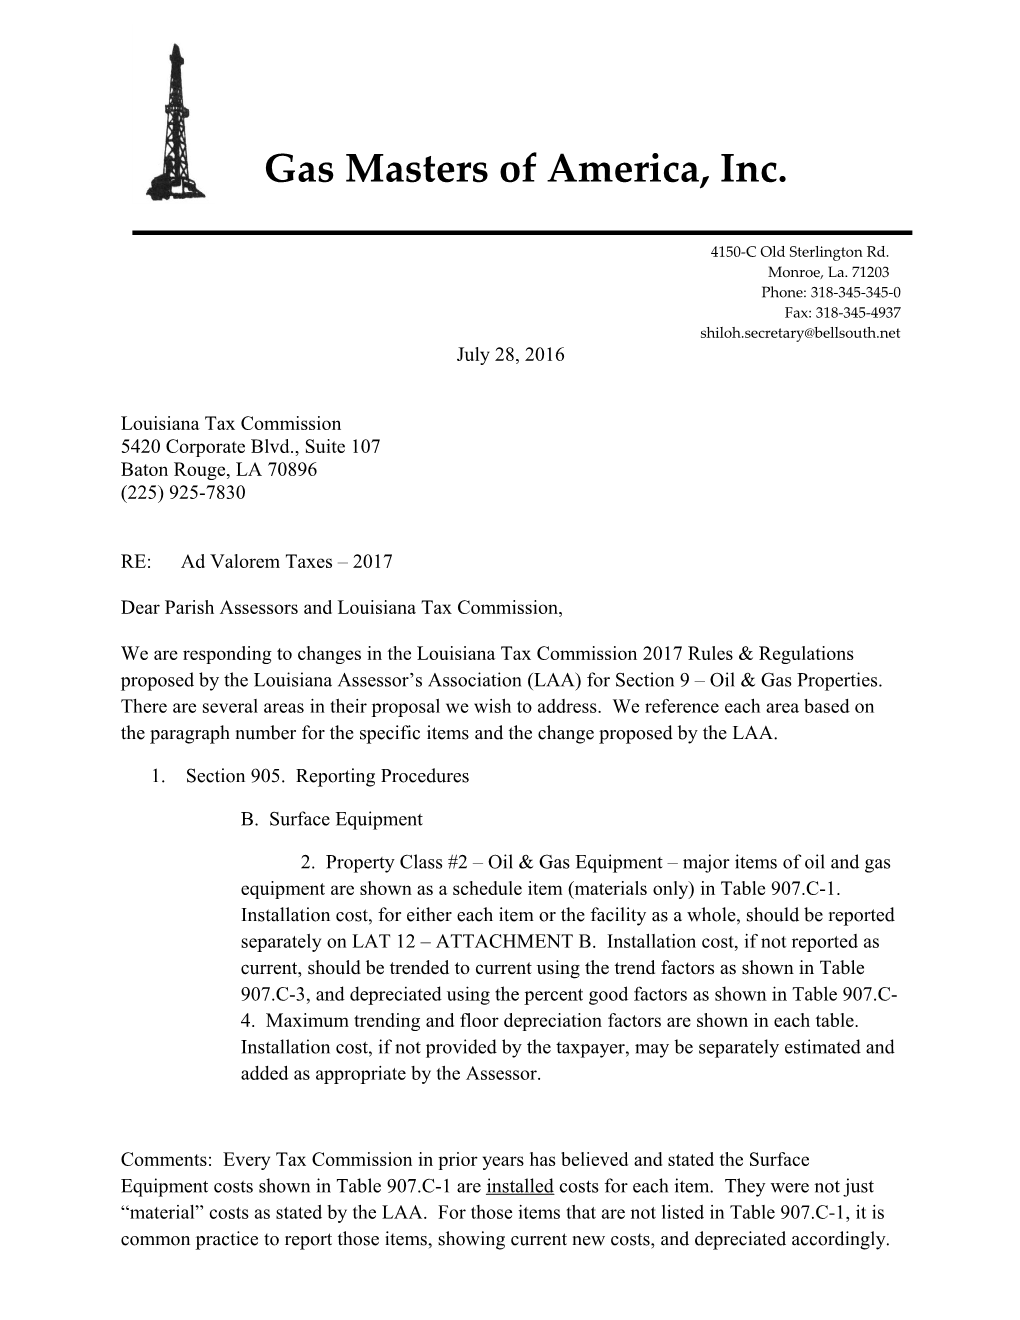 Gas Masters Operator-Referance to Exxon No 1 Surfece and Union Parish La